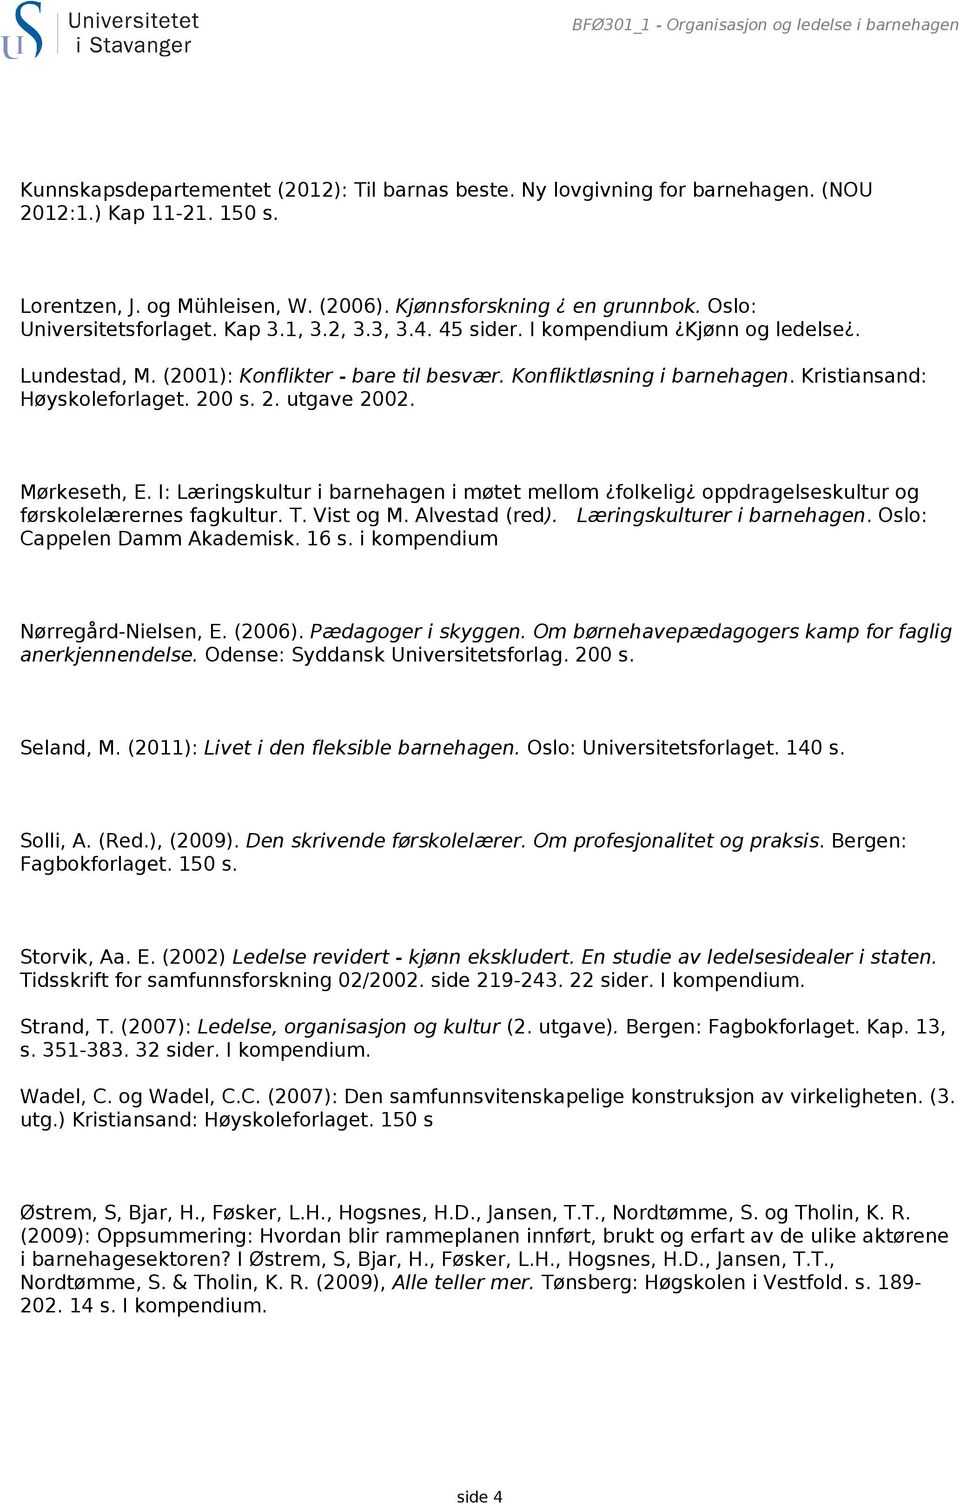 Konfliktløsning i barnehagen. Kristiansand: Høyskoleforlaget. 200 s. 2. utgave 2002. Mørkeseth, E.